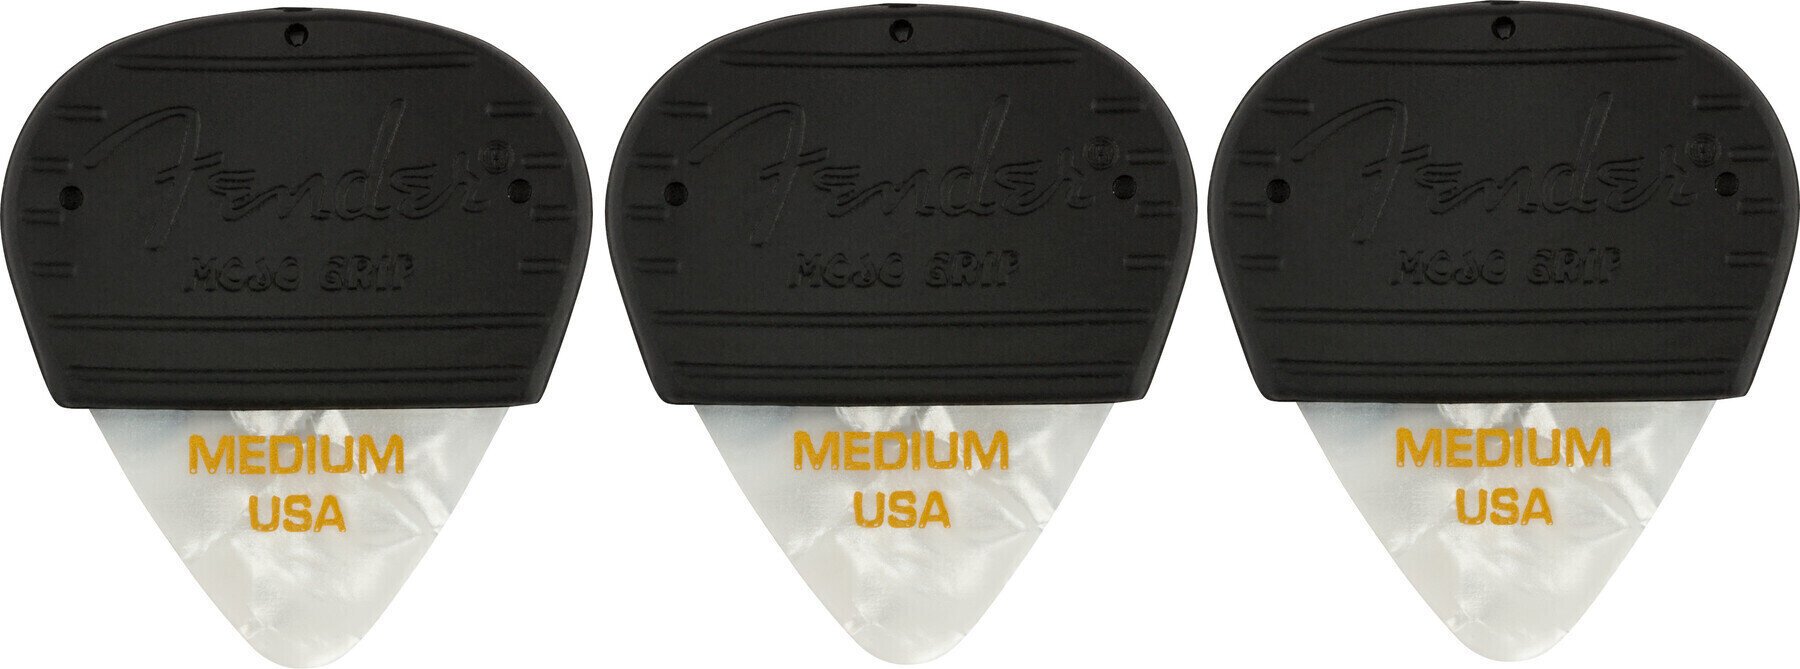 Plectrum Fender Mojo Grip Celluloid M 3 Plectrum